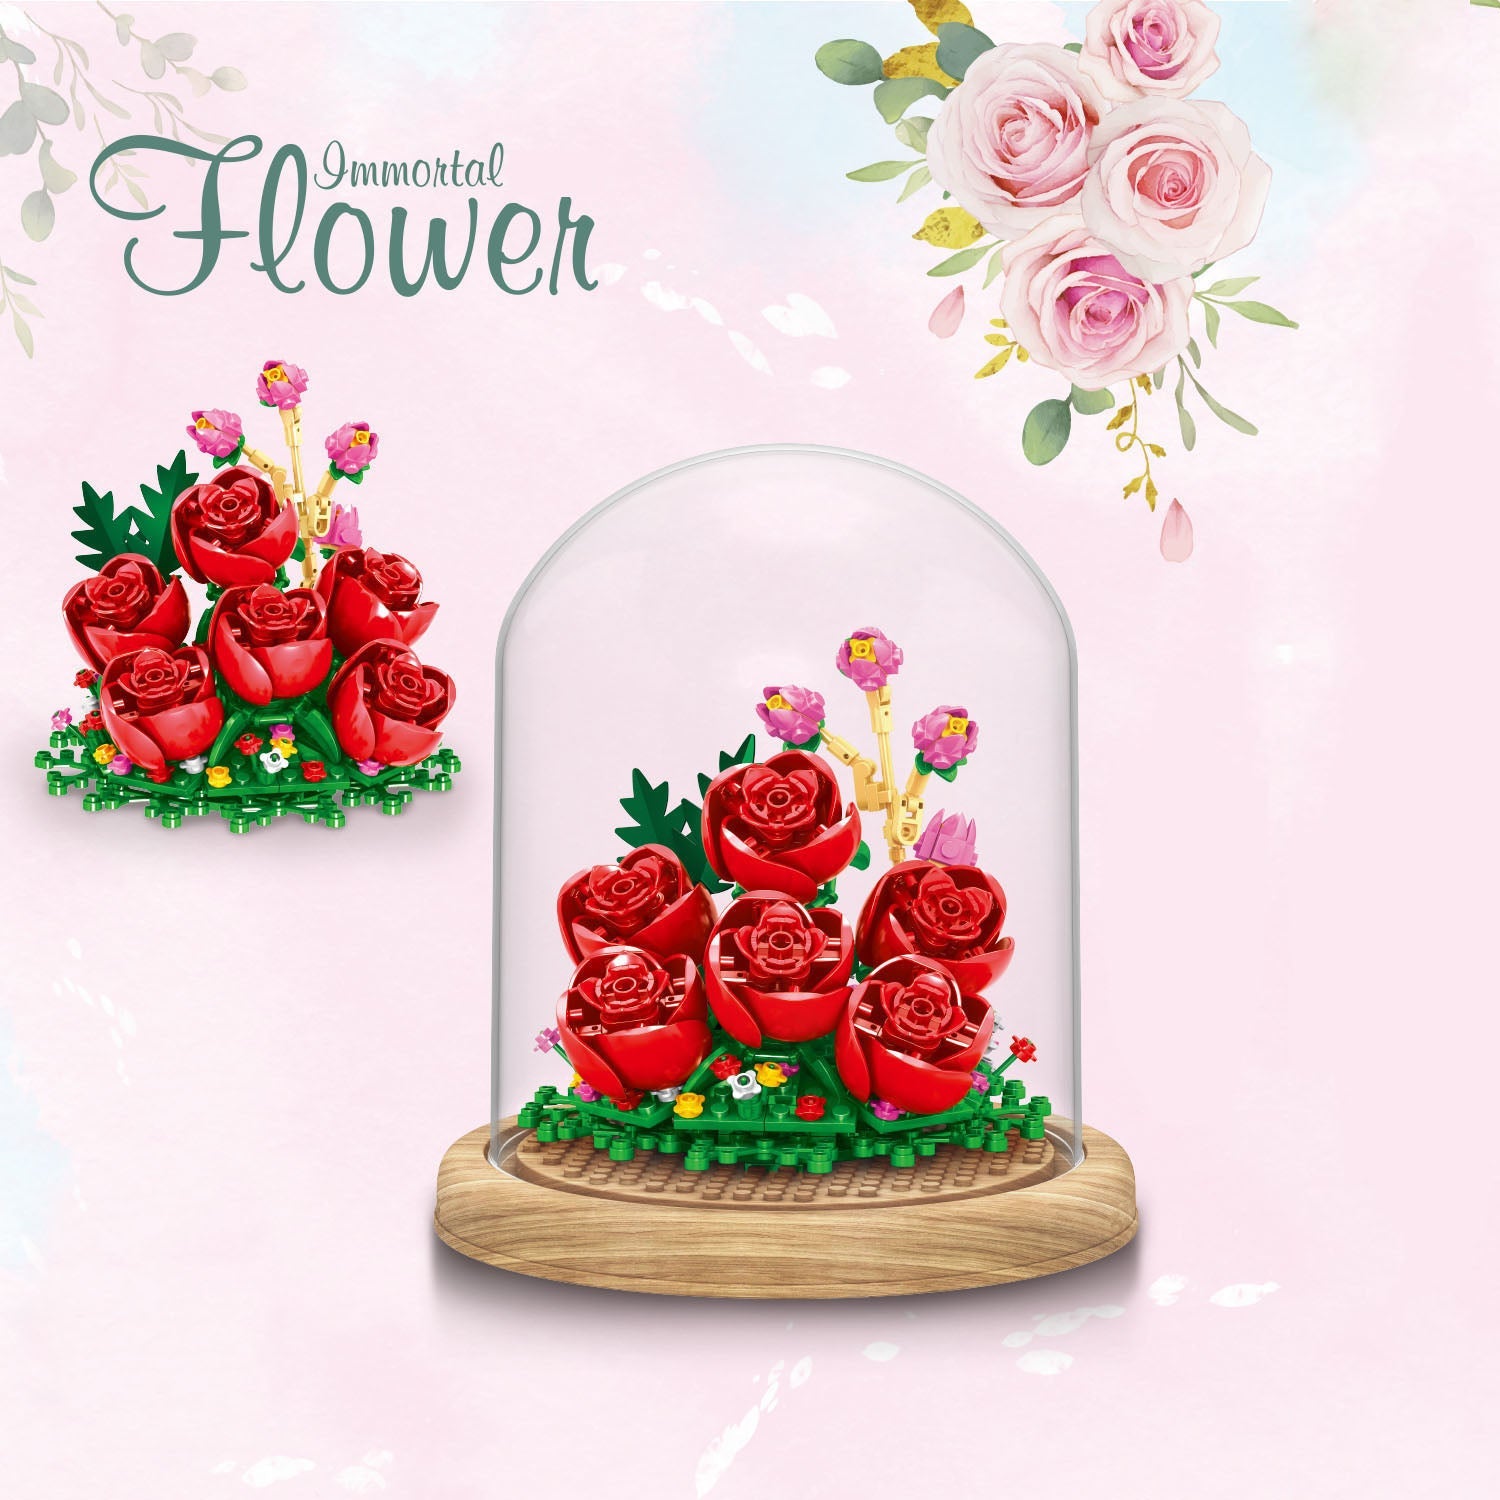 Muttertagsgeschenke Ein einzigartiger Blumenstrauß und eine kreative Enternal-Blume für Mama